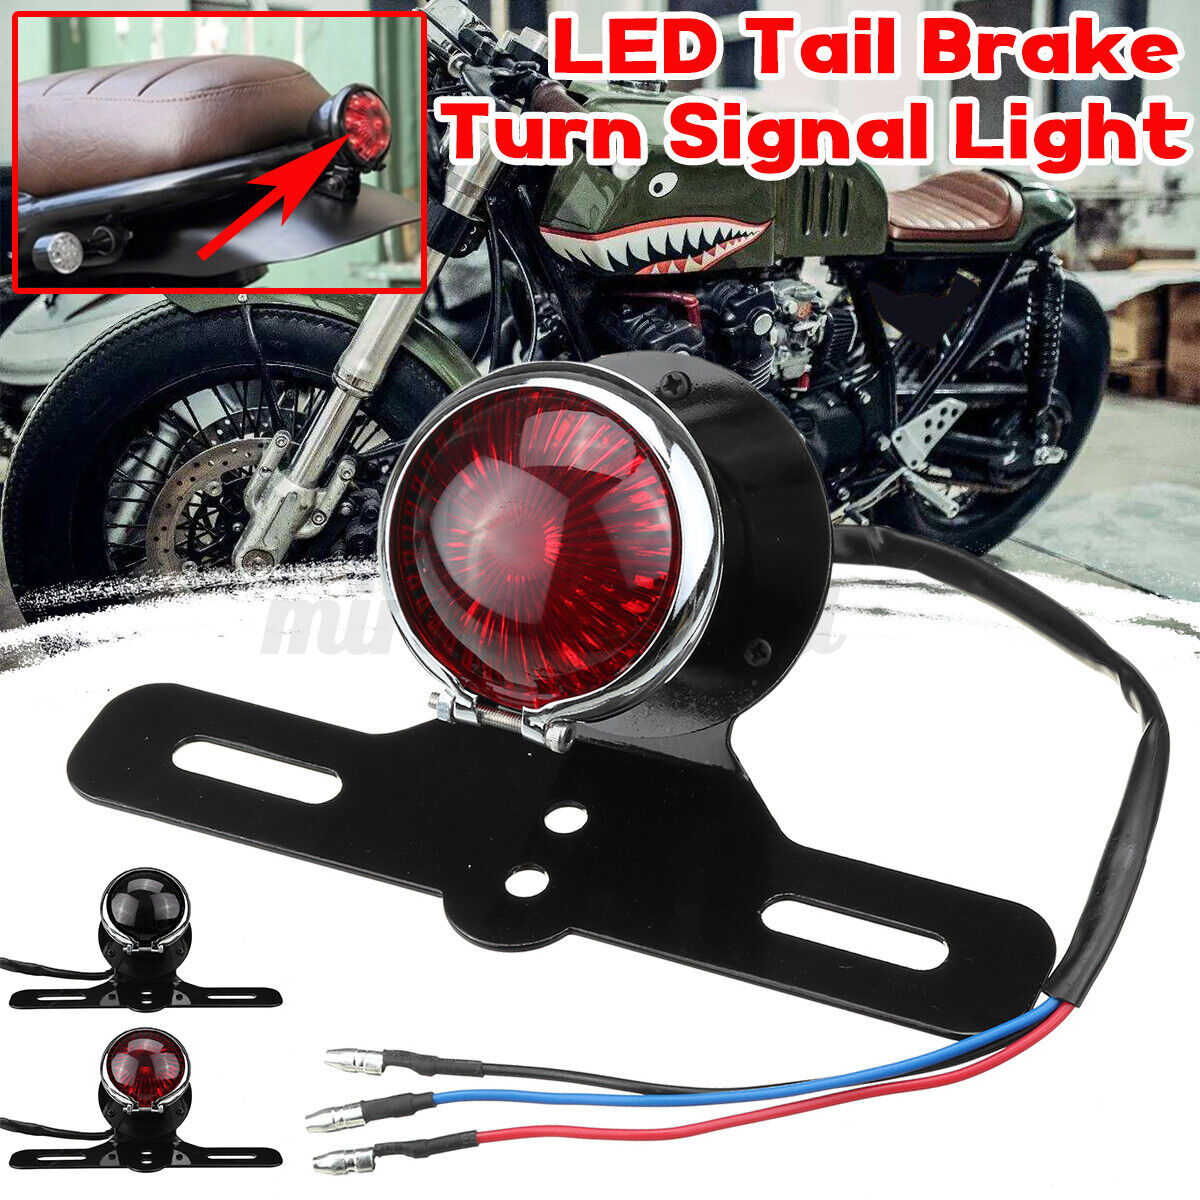 12V LED Motorcycle Turn Signals Brake License Plate Tail Light For Harley Bobber